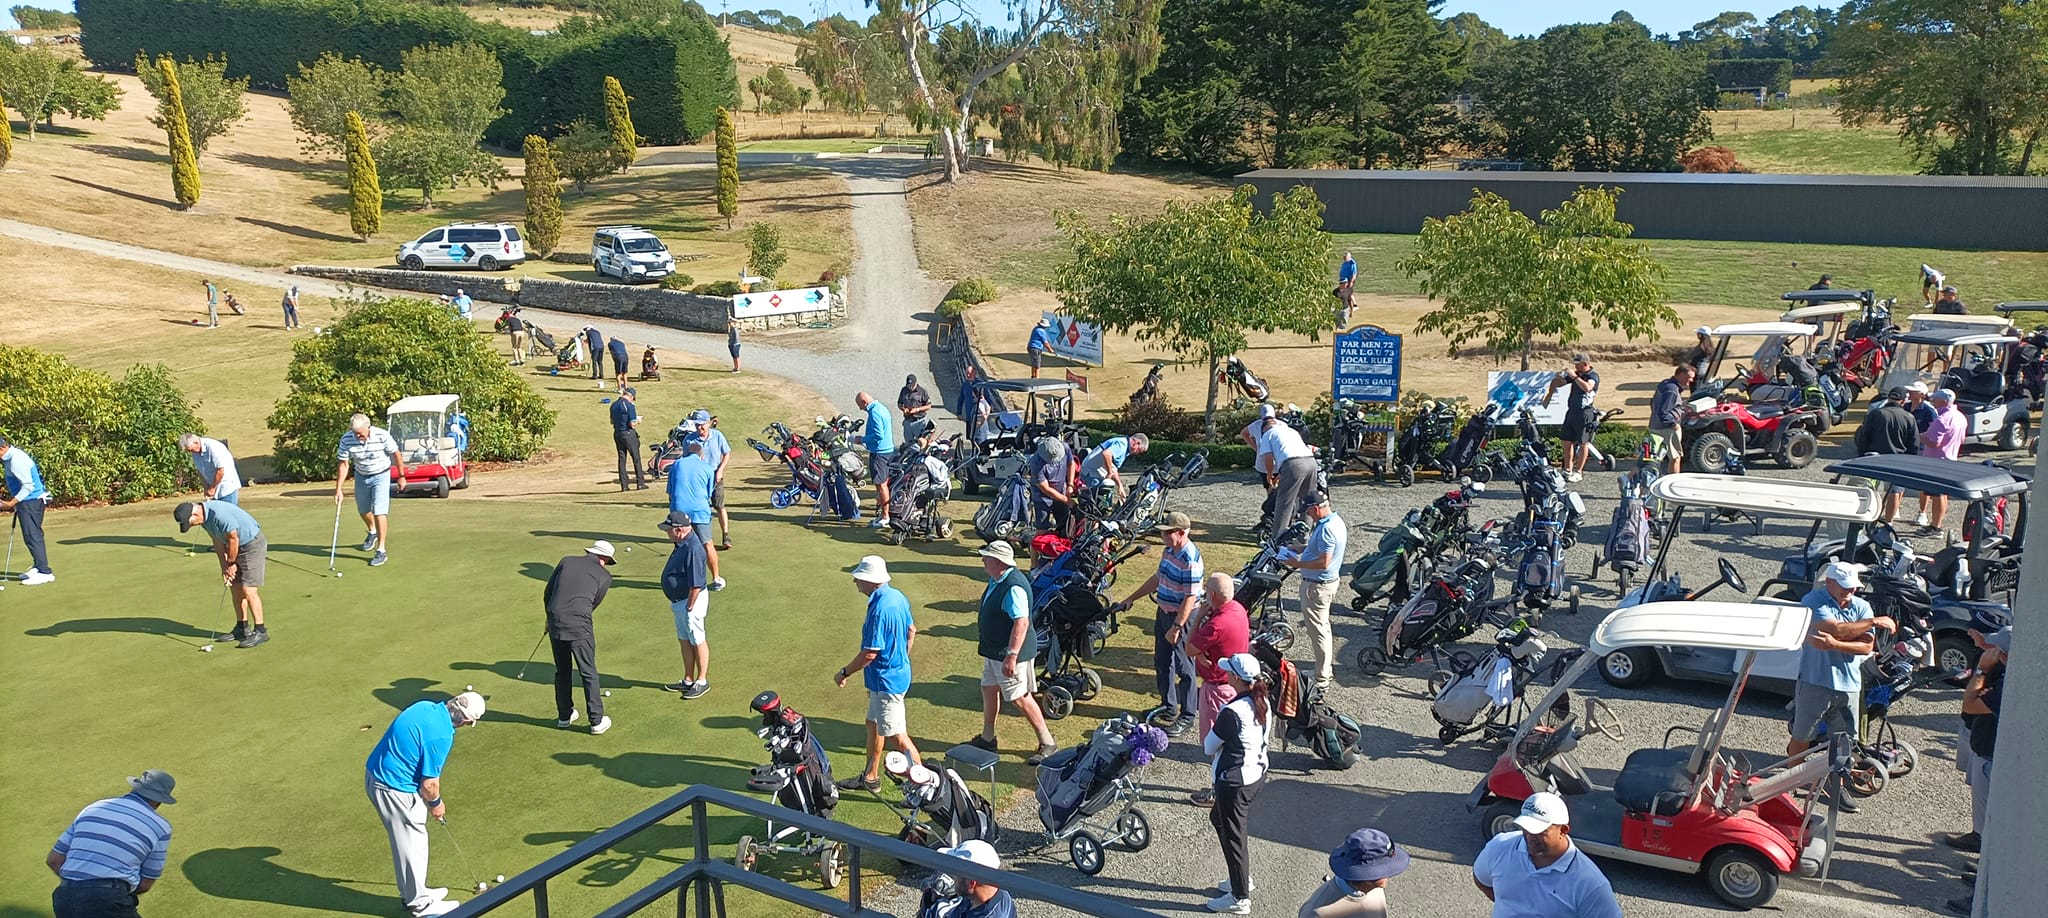 @North Otago Golf Club